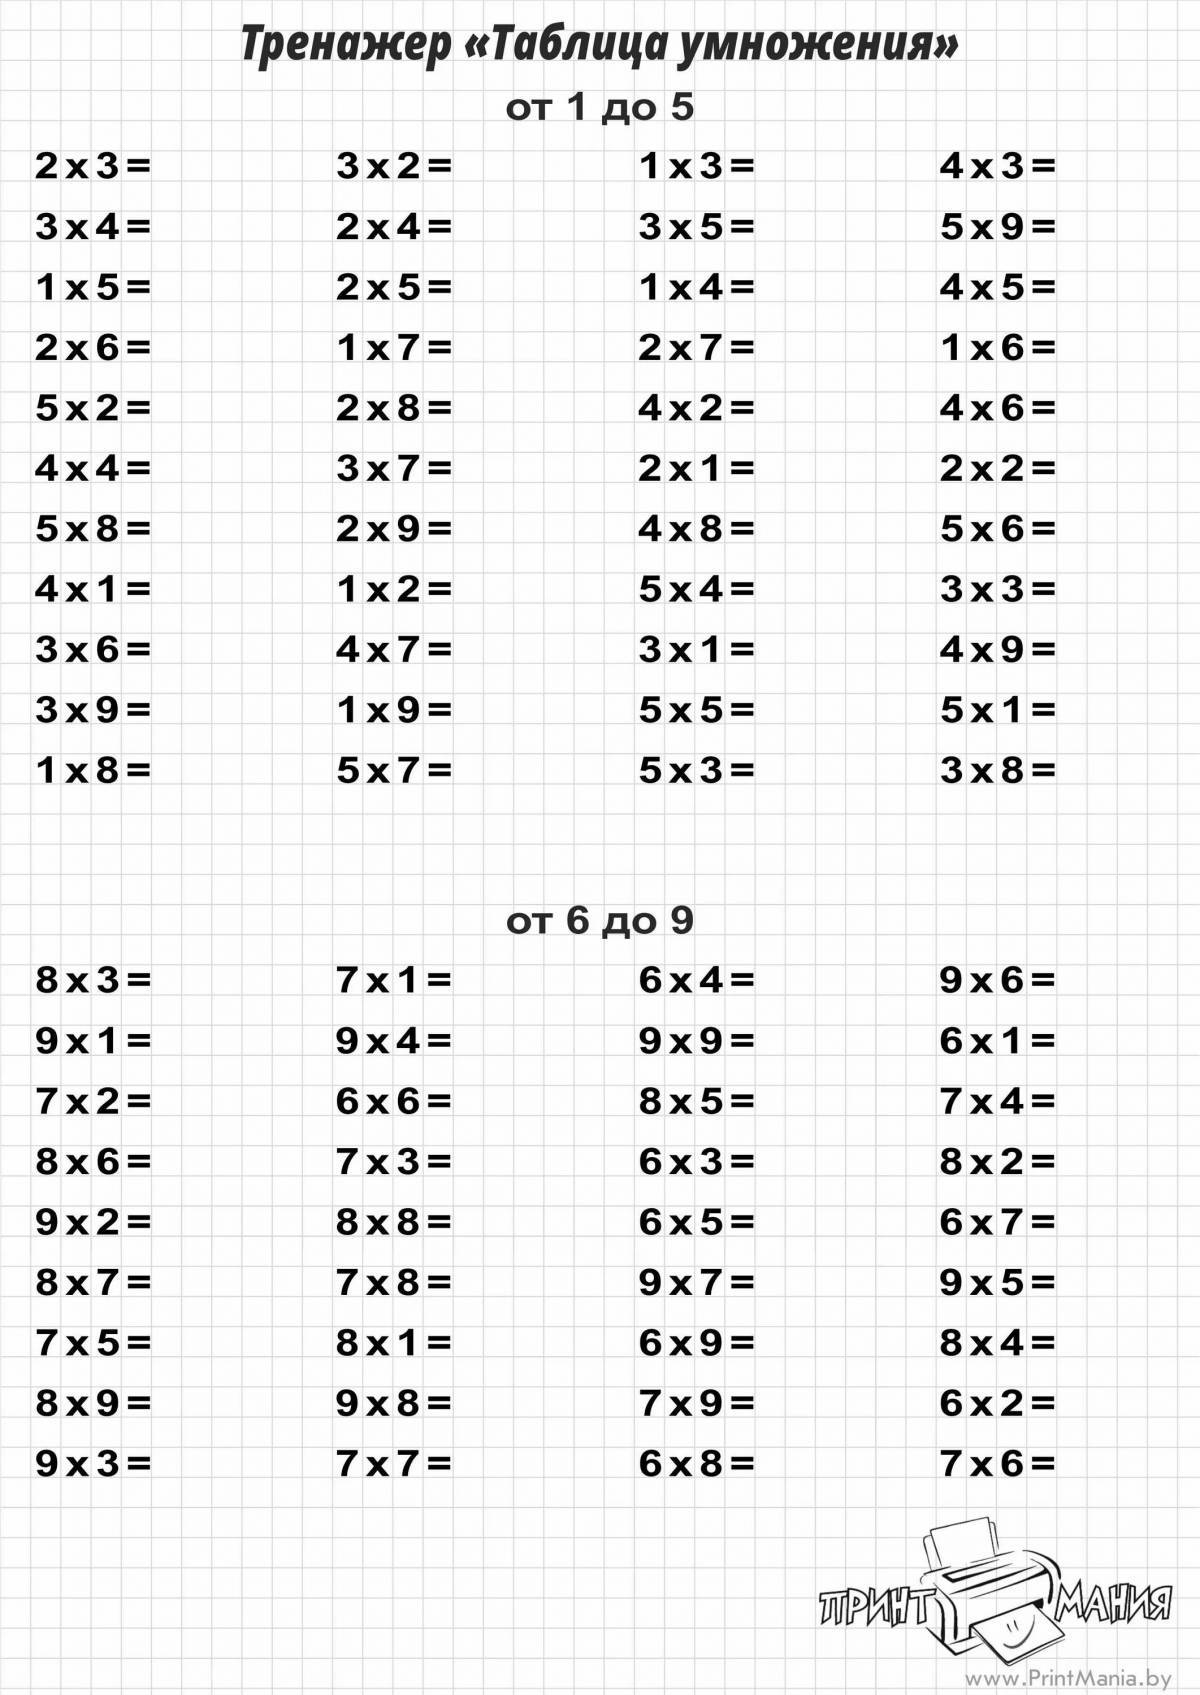 Таблица умножения на 2 и 3 тренажер для 2 класса #39